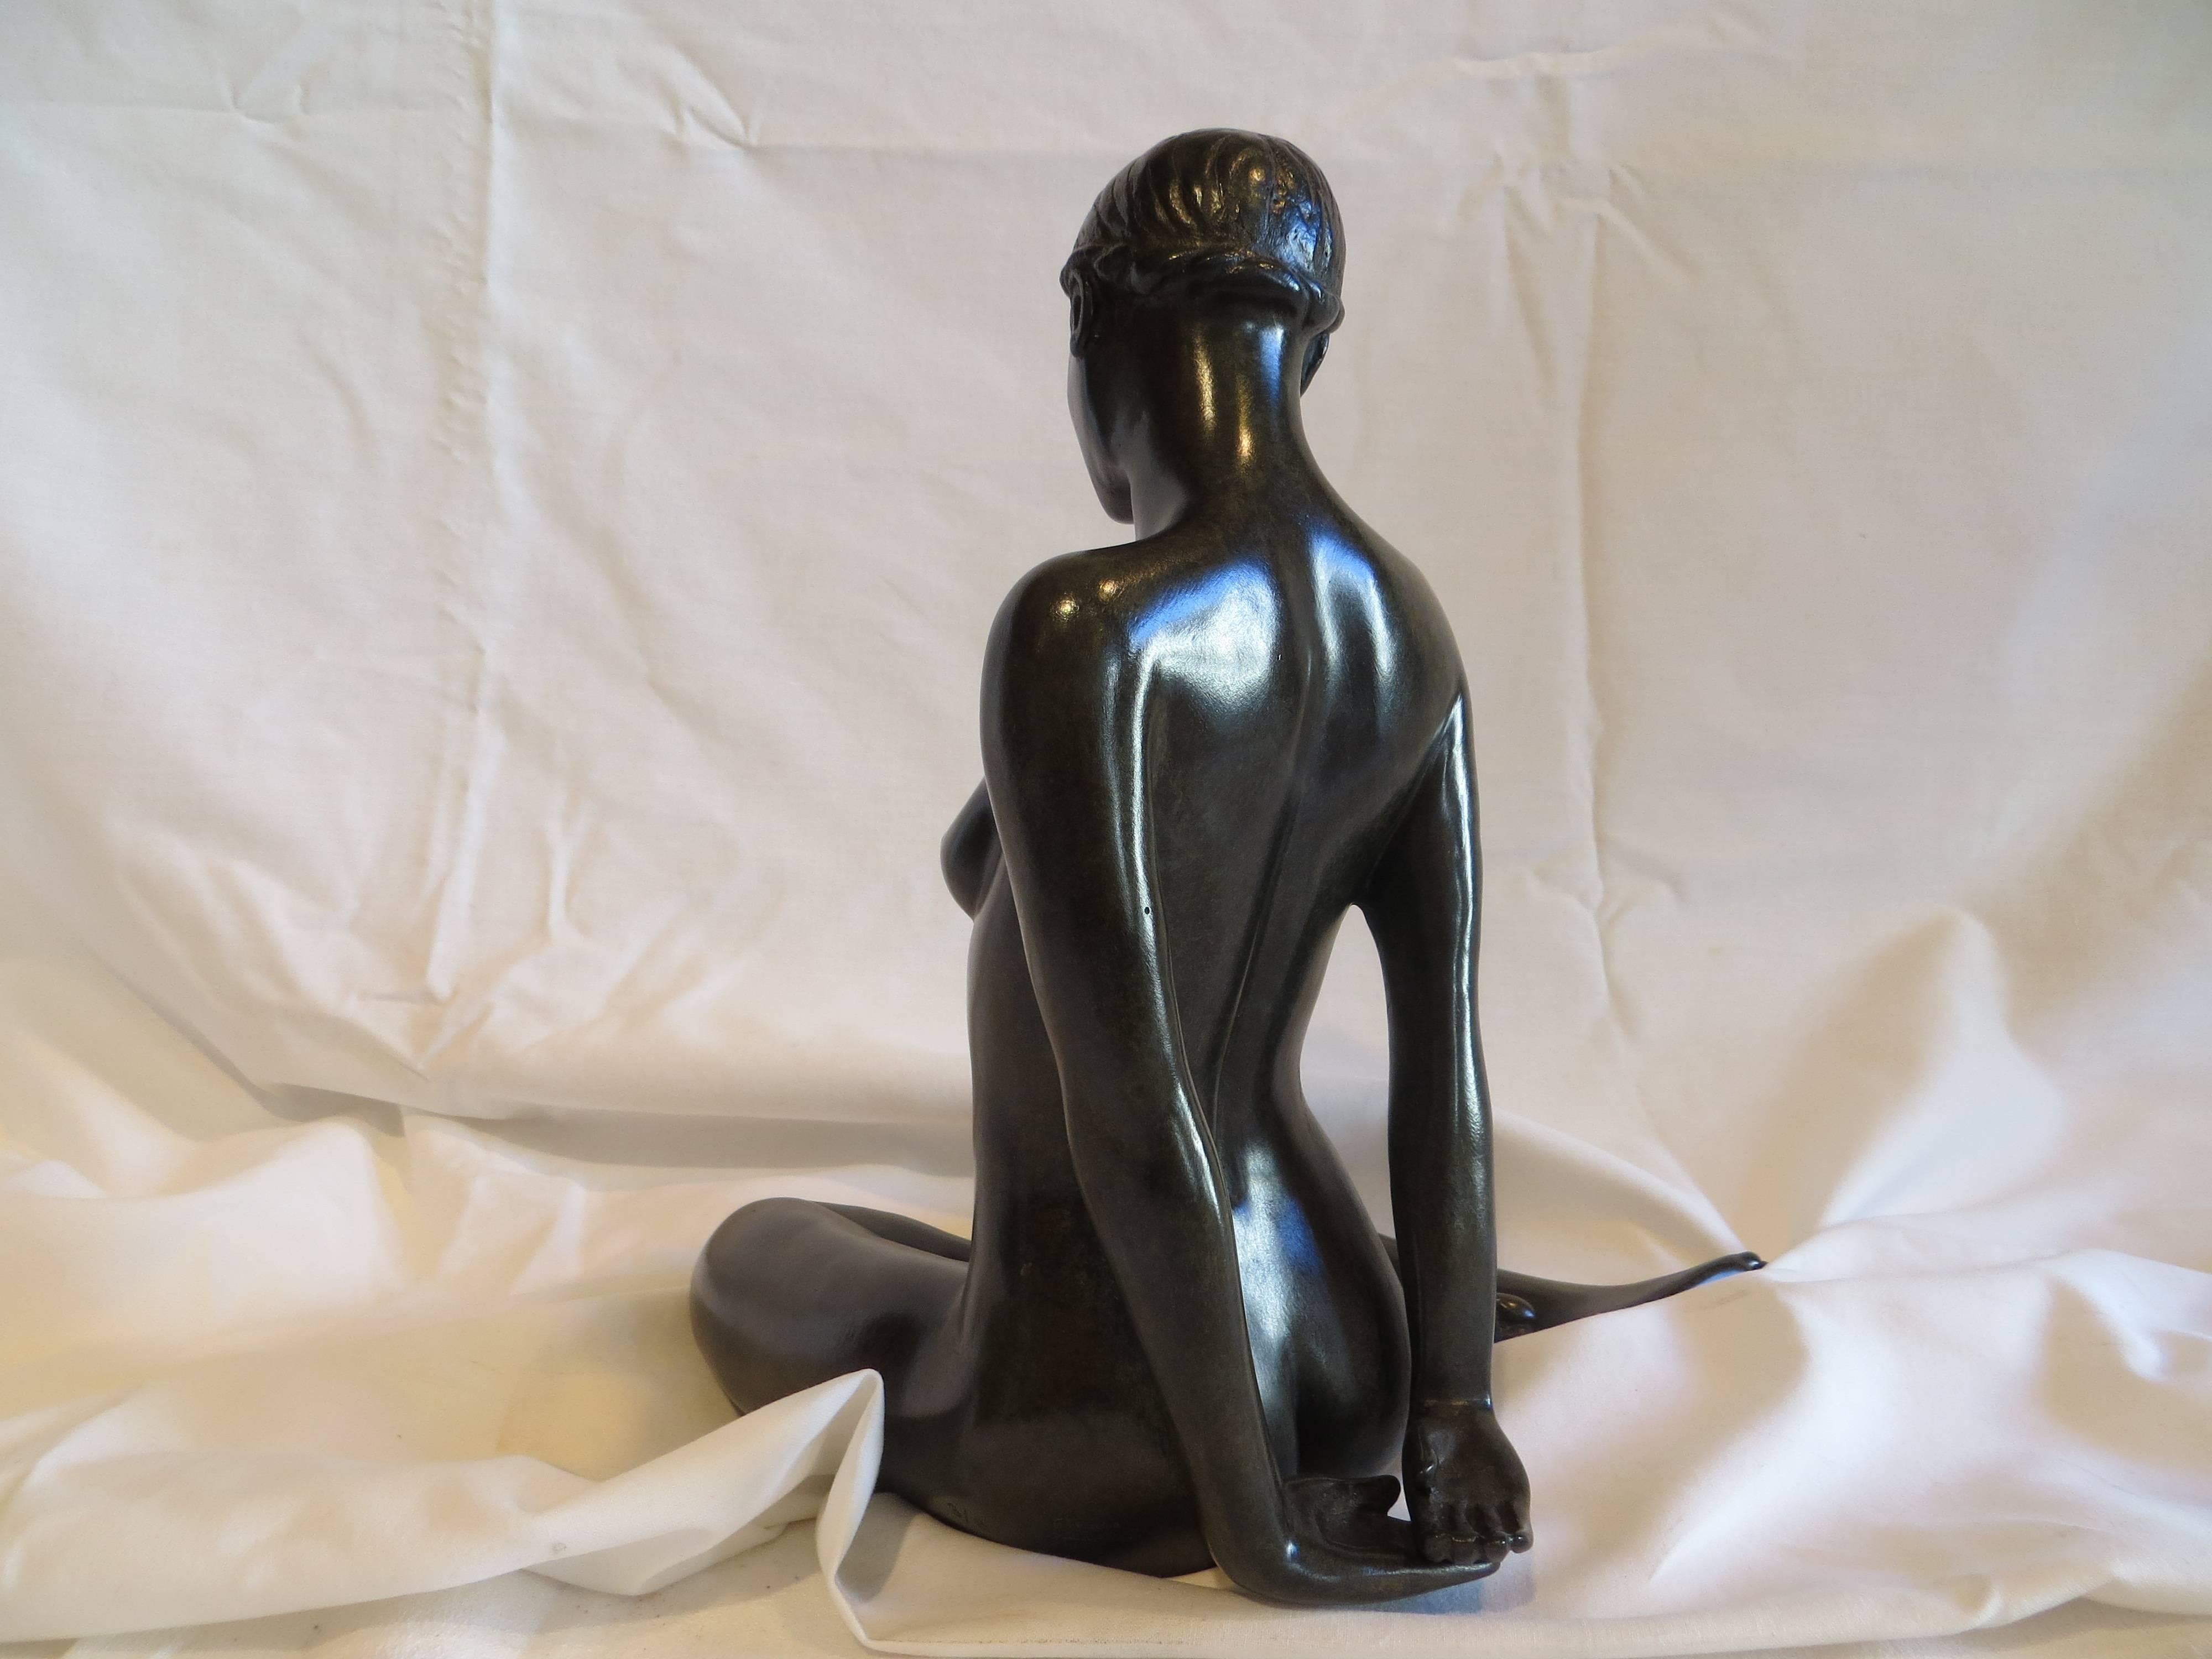 Menoca, cuir d'olive - Sculpture de Patrick Brun